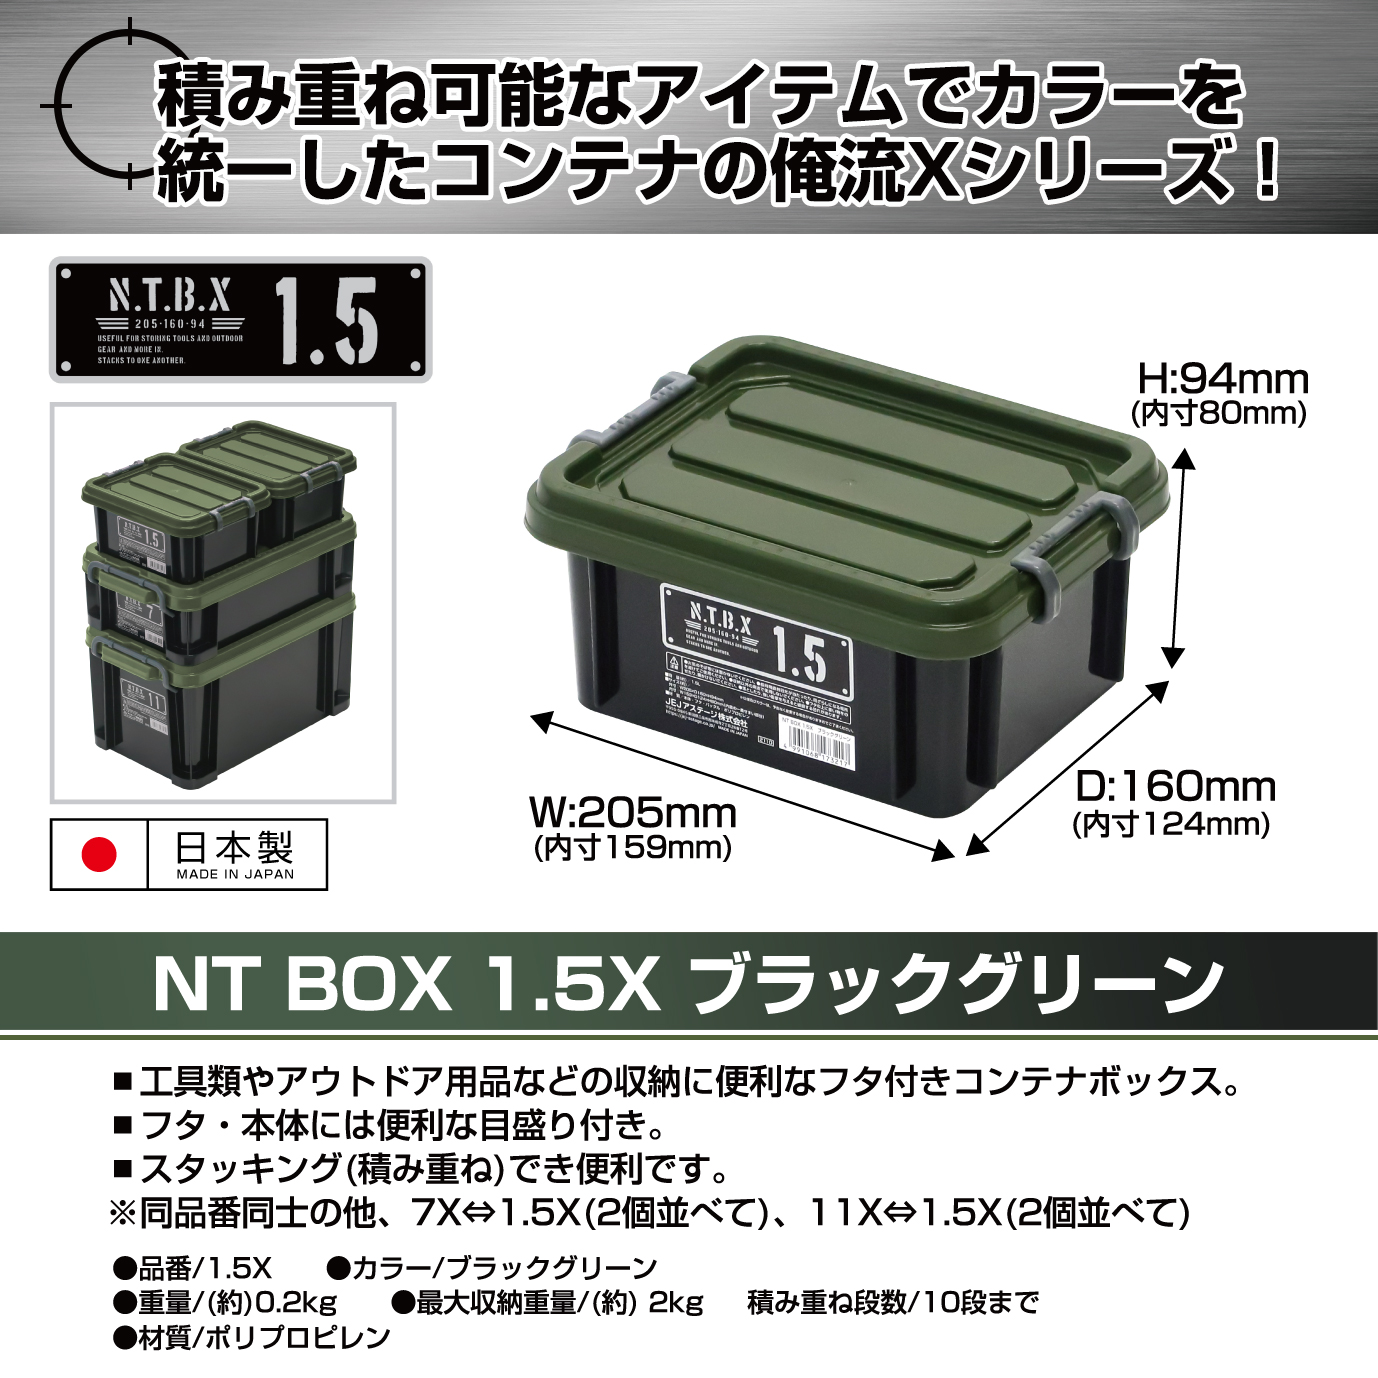 新商品紹介】Xシリーズ～NTボックス～ - JEJアステージ株式会社 